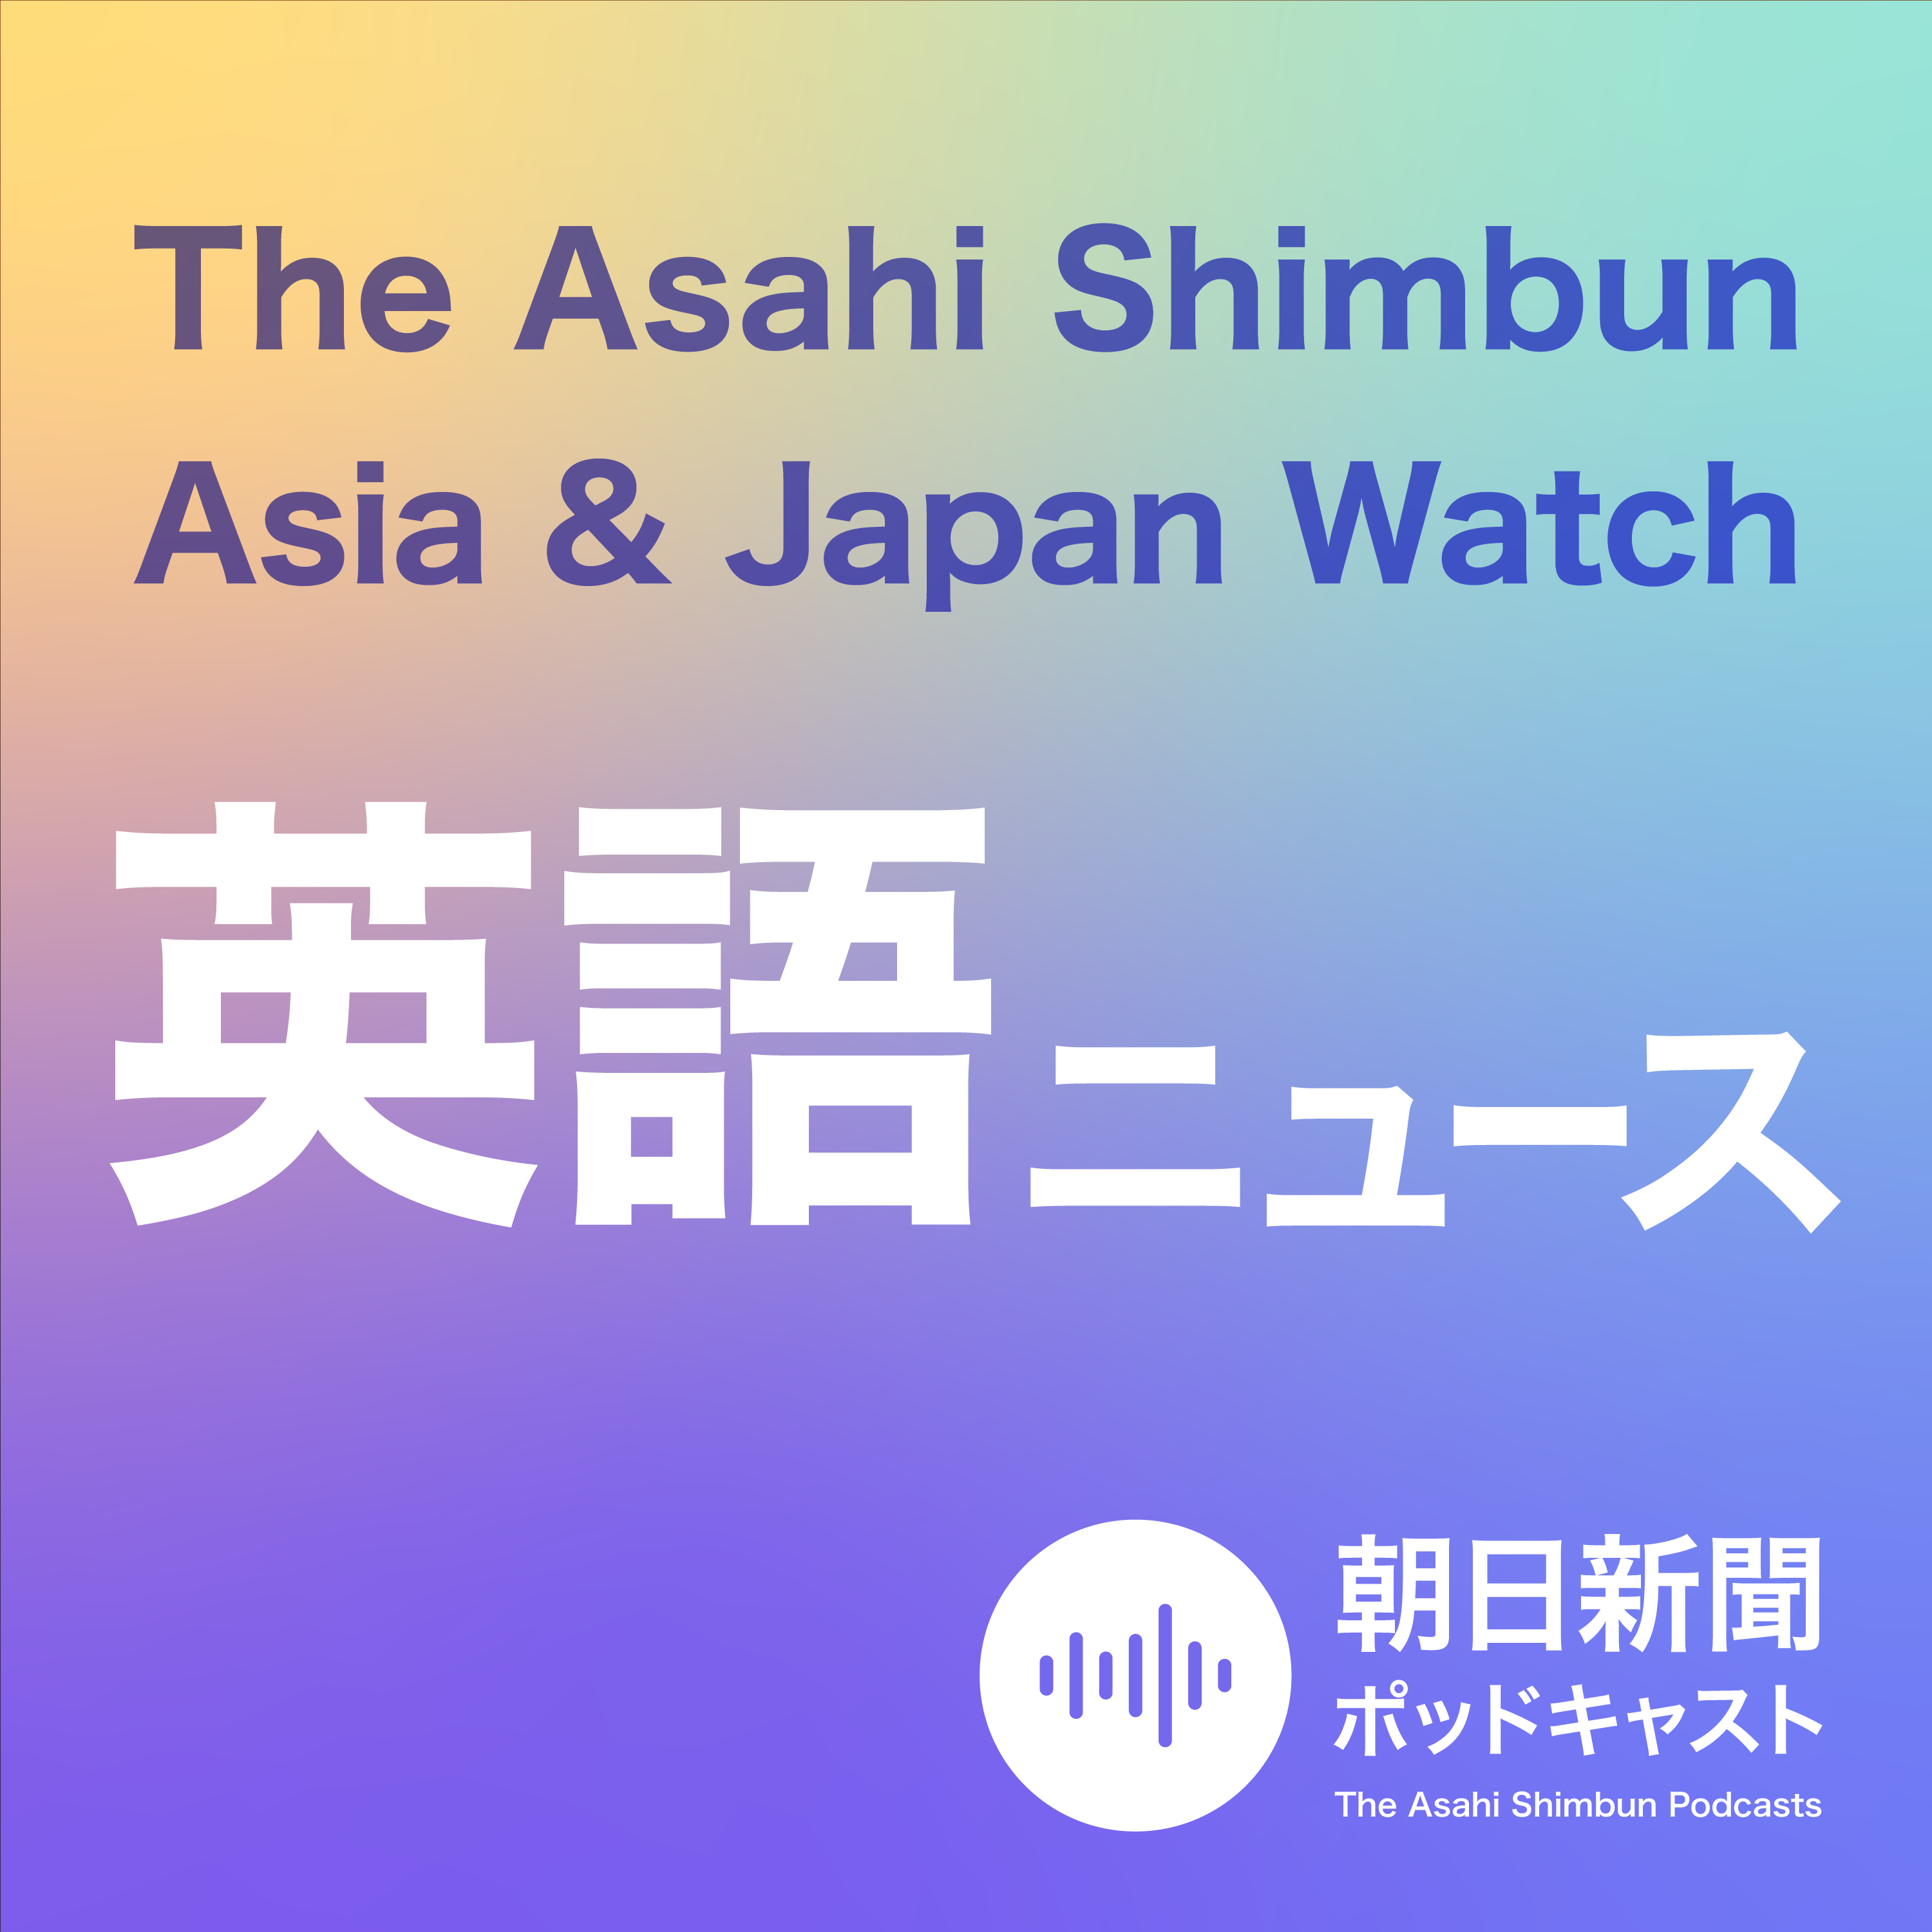 AJW The Asahi Shimbun Asia & Japan Watch